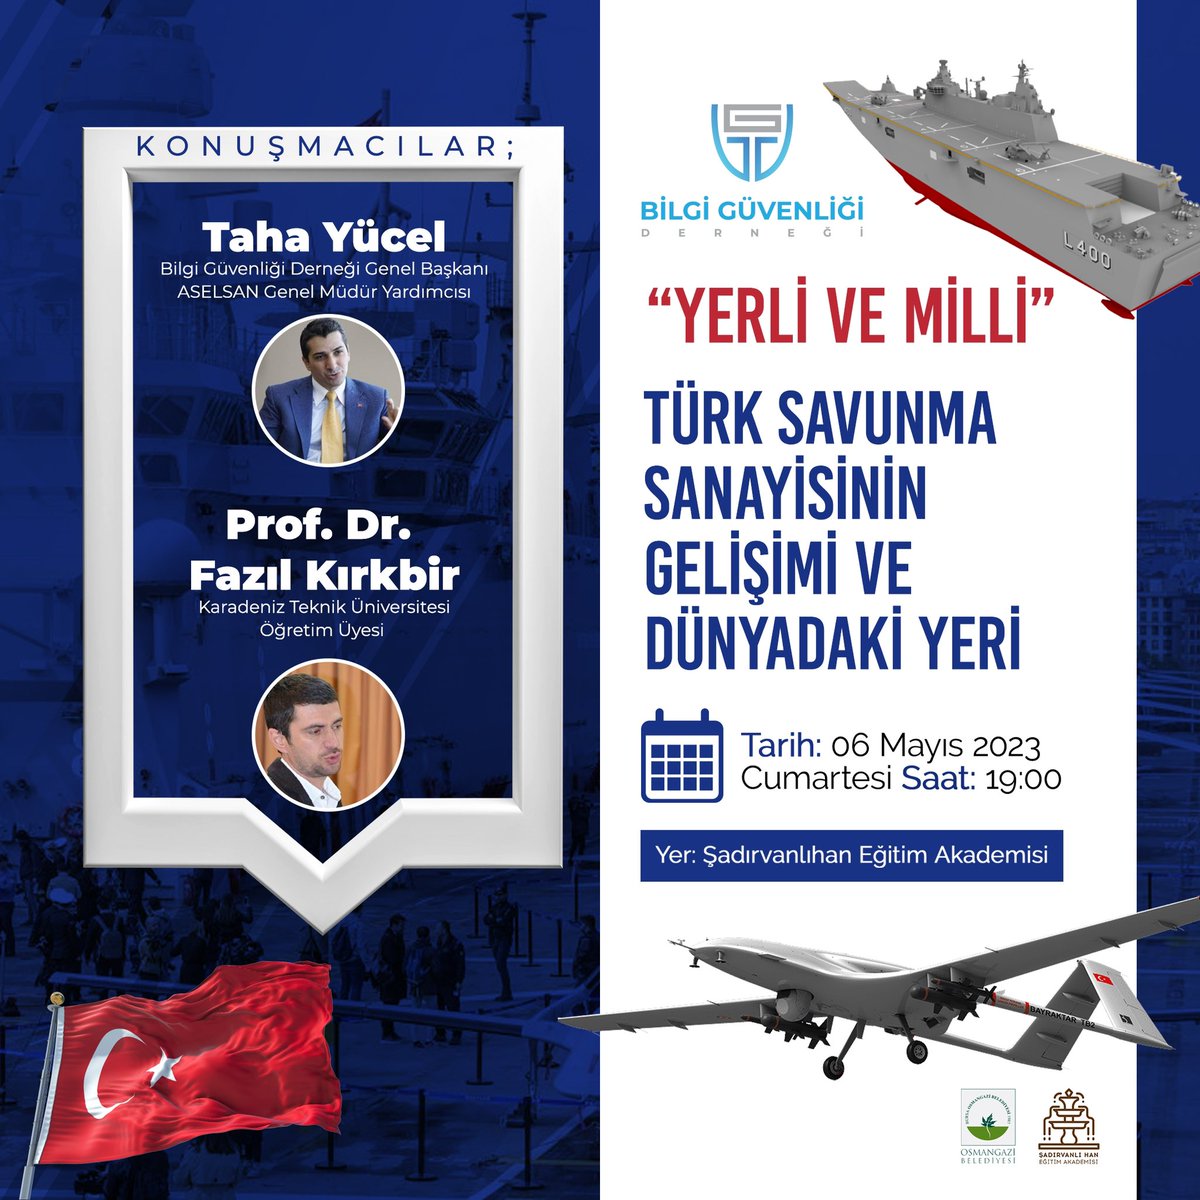 Yerli ve Milli Türk Savunma Sanayisinin Gelişimi ve Dünyadaki Yeri

🗣️Taha YÜCEL 
BGD Genel Başkanı

🗣️Prof. Dr. Fazıl KIRKBİR 
KTÜ Öğr. Üyesi

📍ŞadırvanlıHan Eğitim Akademisi

🔴Kayıtlı katılımcı kabul edilmektedir. Ücretsizdir.
🔴Kayıt için Whatsapp: 0531 695 85 36